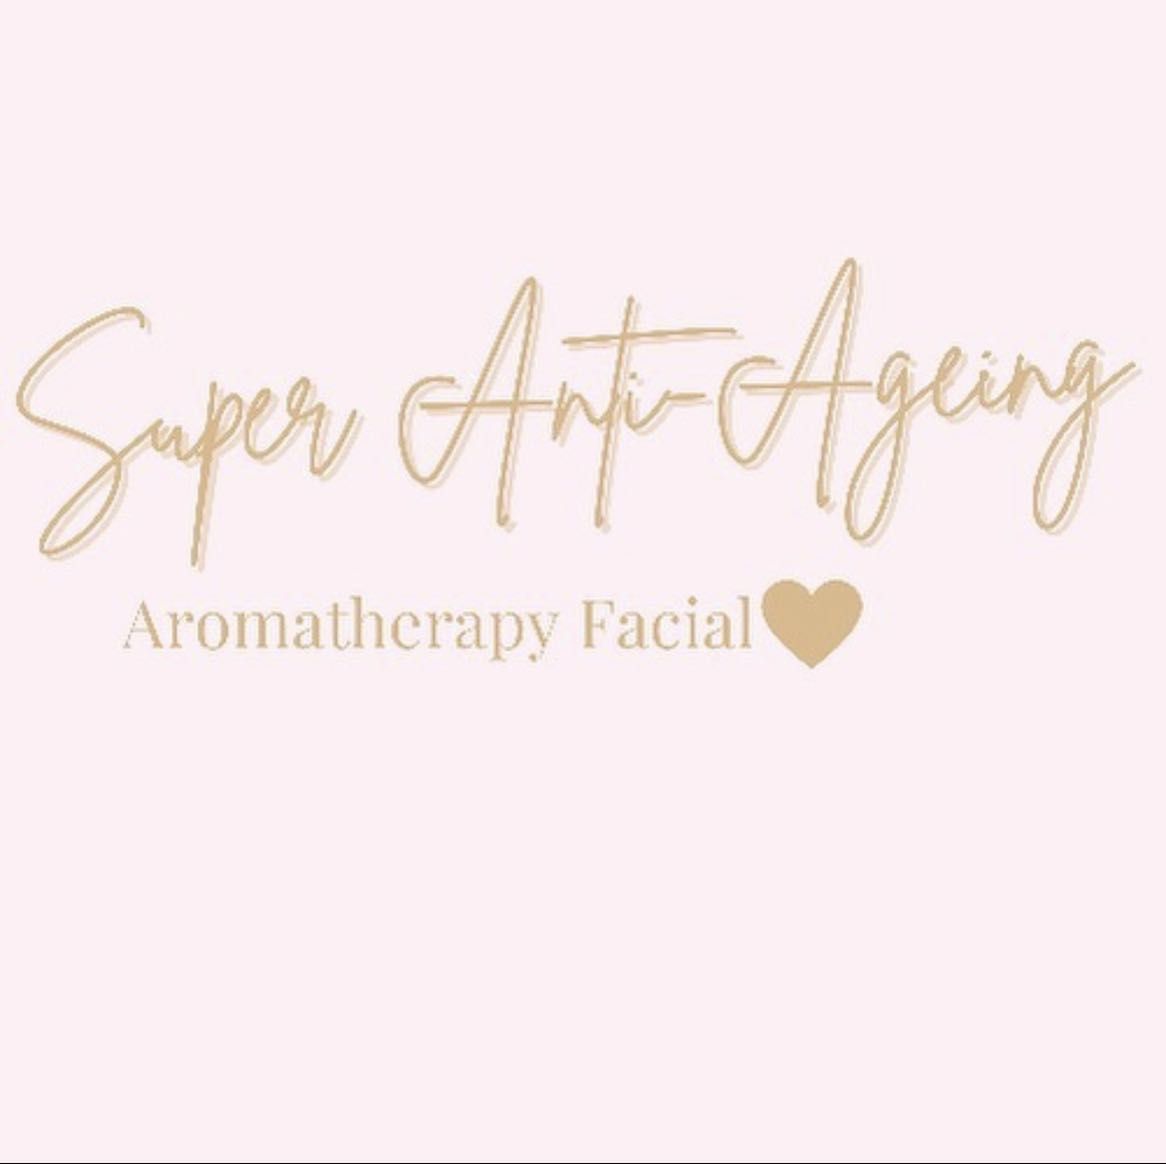 Super Anti-Ageing Aromatherapy Facial portfolio